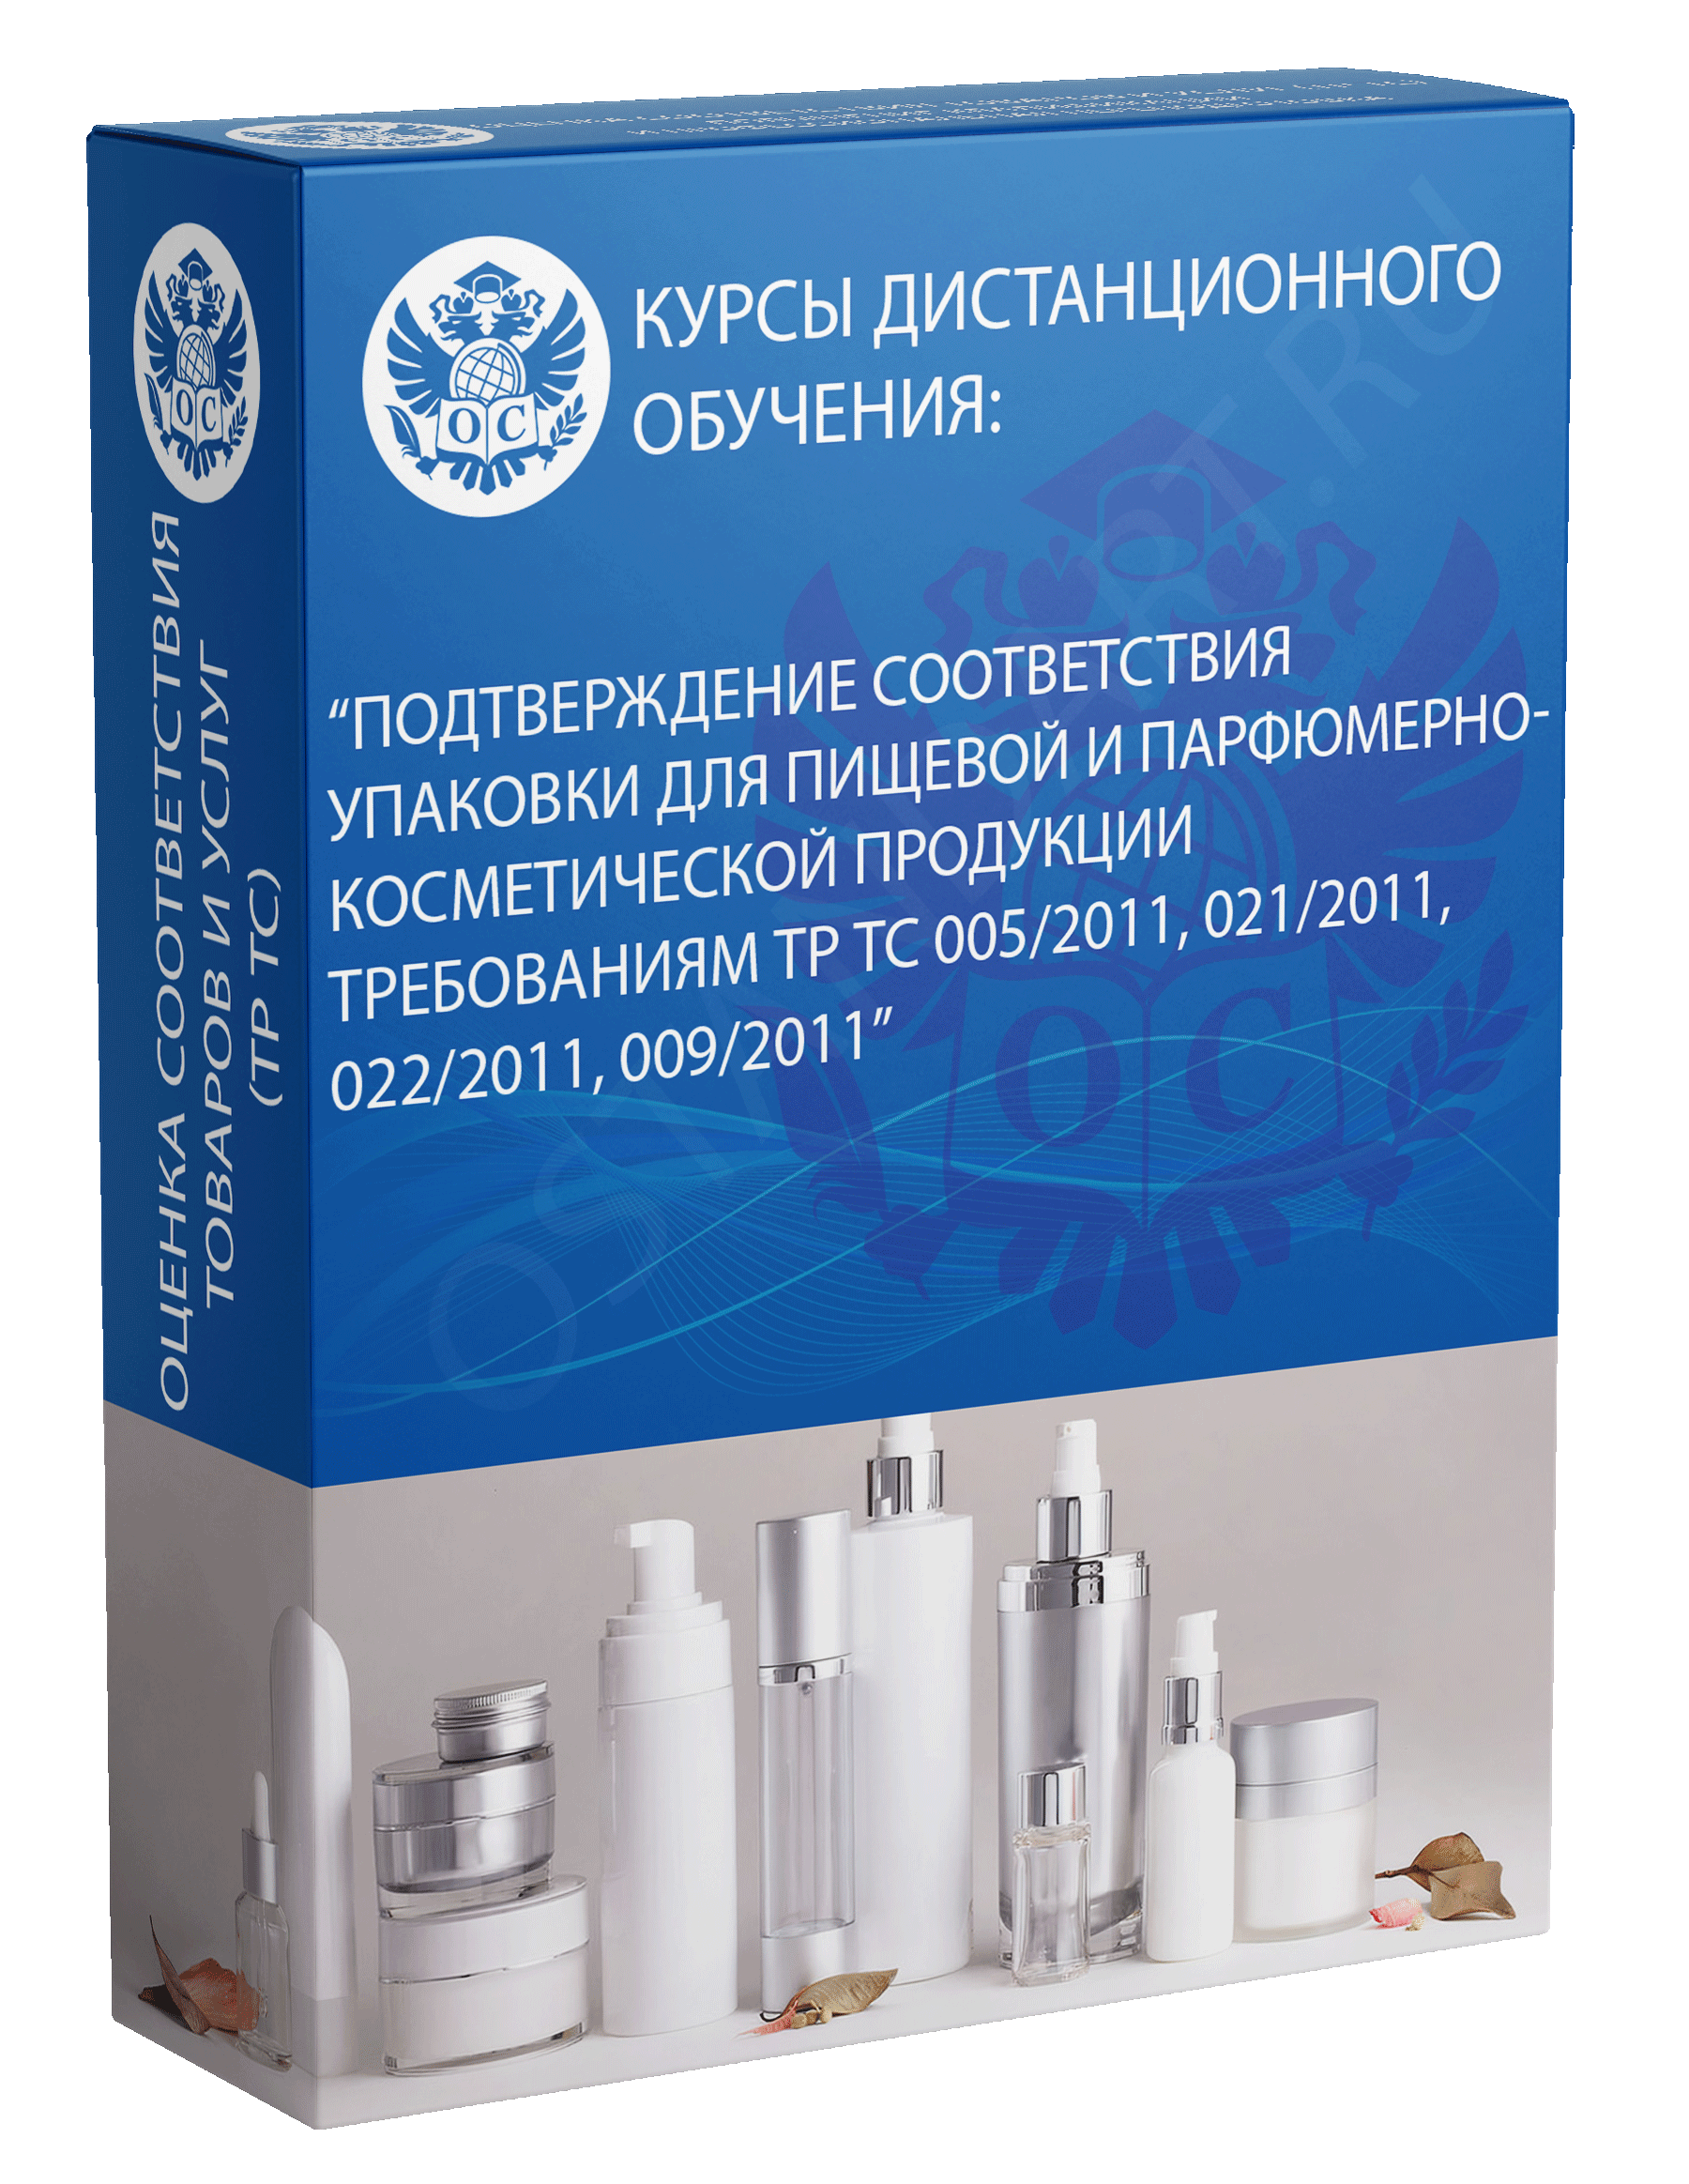 Подтверждение соответствия упаковки для пищевой и парфюмерно-косметической продукции требованиям ТР ТС 005/2011, 021/2011, 022/2011, 009/2011 курс обучения